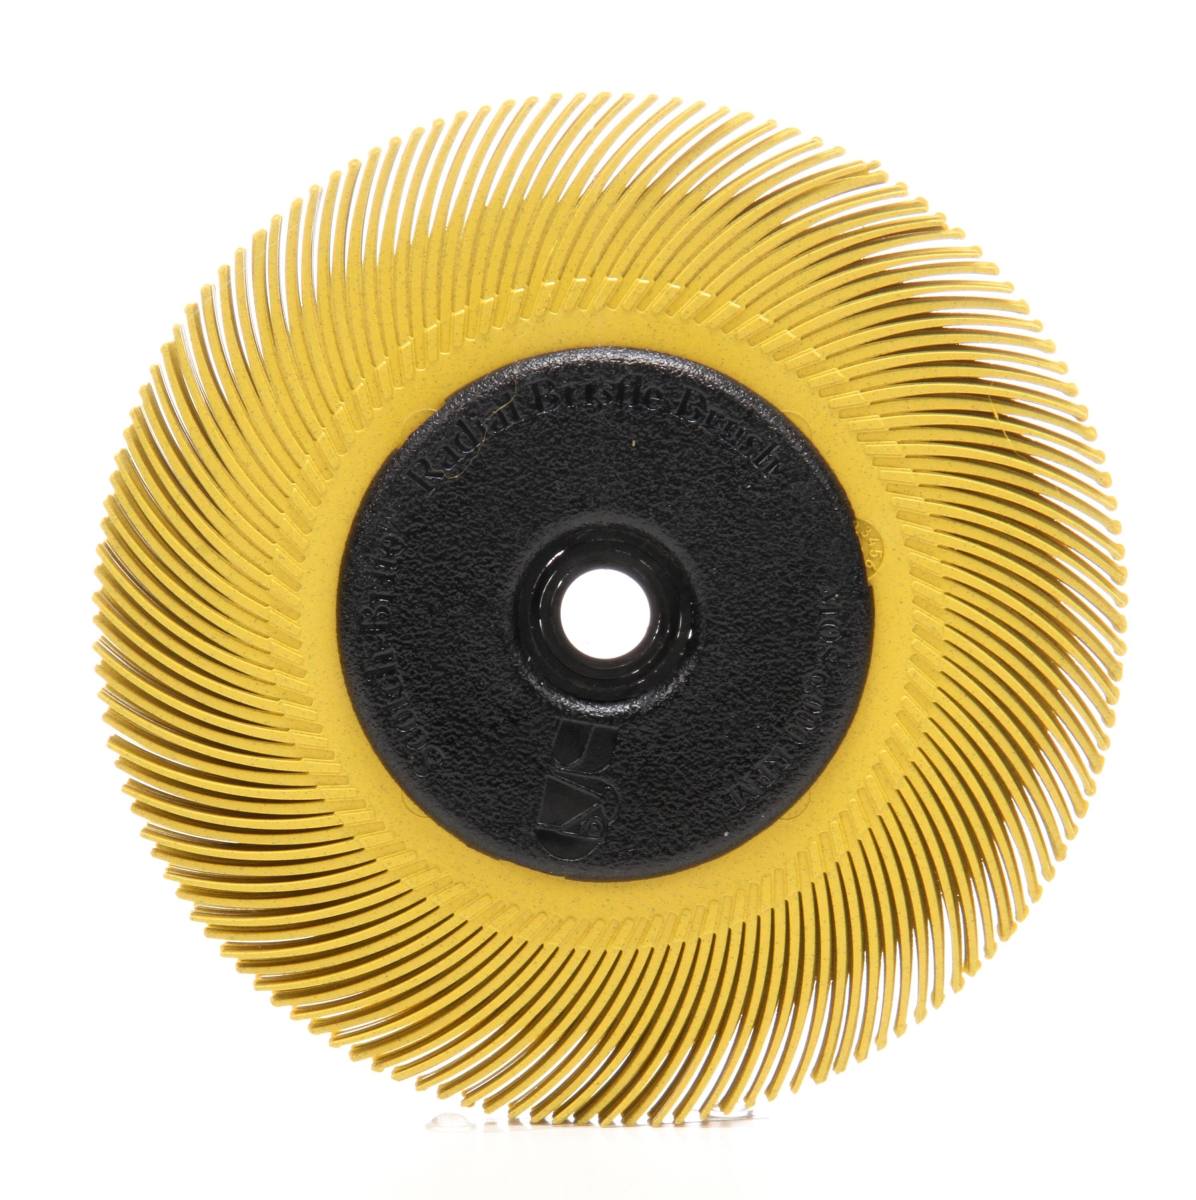 3M Scotch-Brite Radial Bristle Disc BB-ZB avec bride, jaune, 193,5 mm, P80, type C #33129